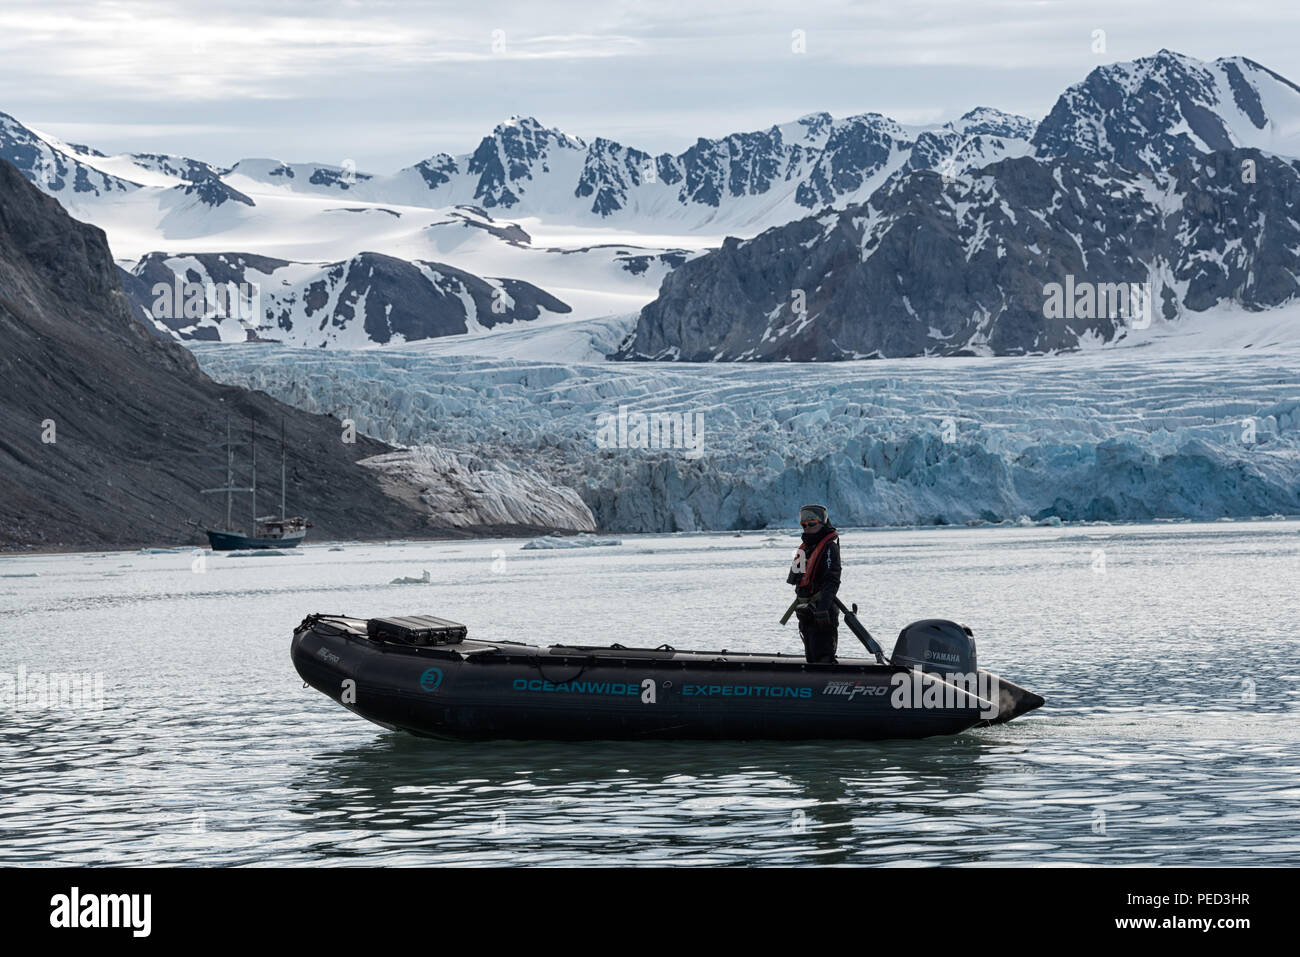 Fjortende Julibreen e Fjortende Julibukta. Ghiacciaio e fiordo con uno zodiaco e nave a vela Antigua di fronte. Spitsbergen, Svalbard, Norvegia Foto Stock